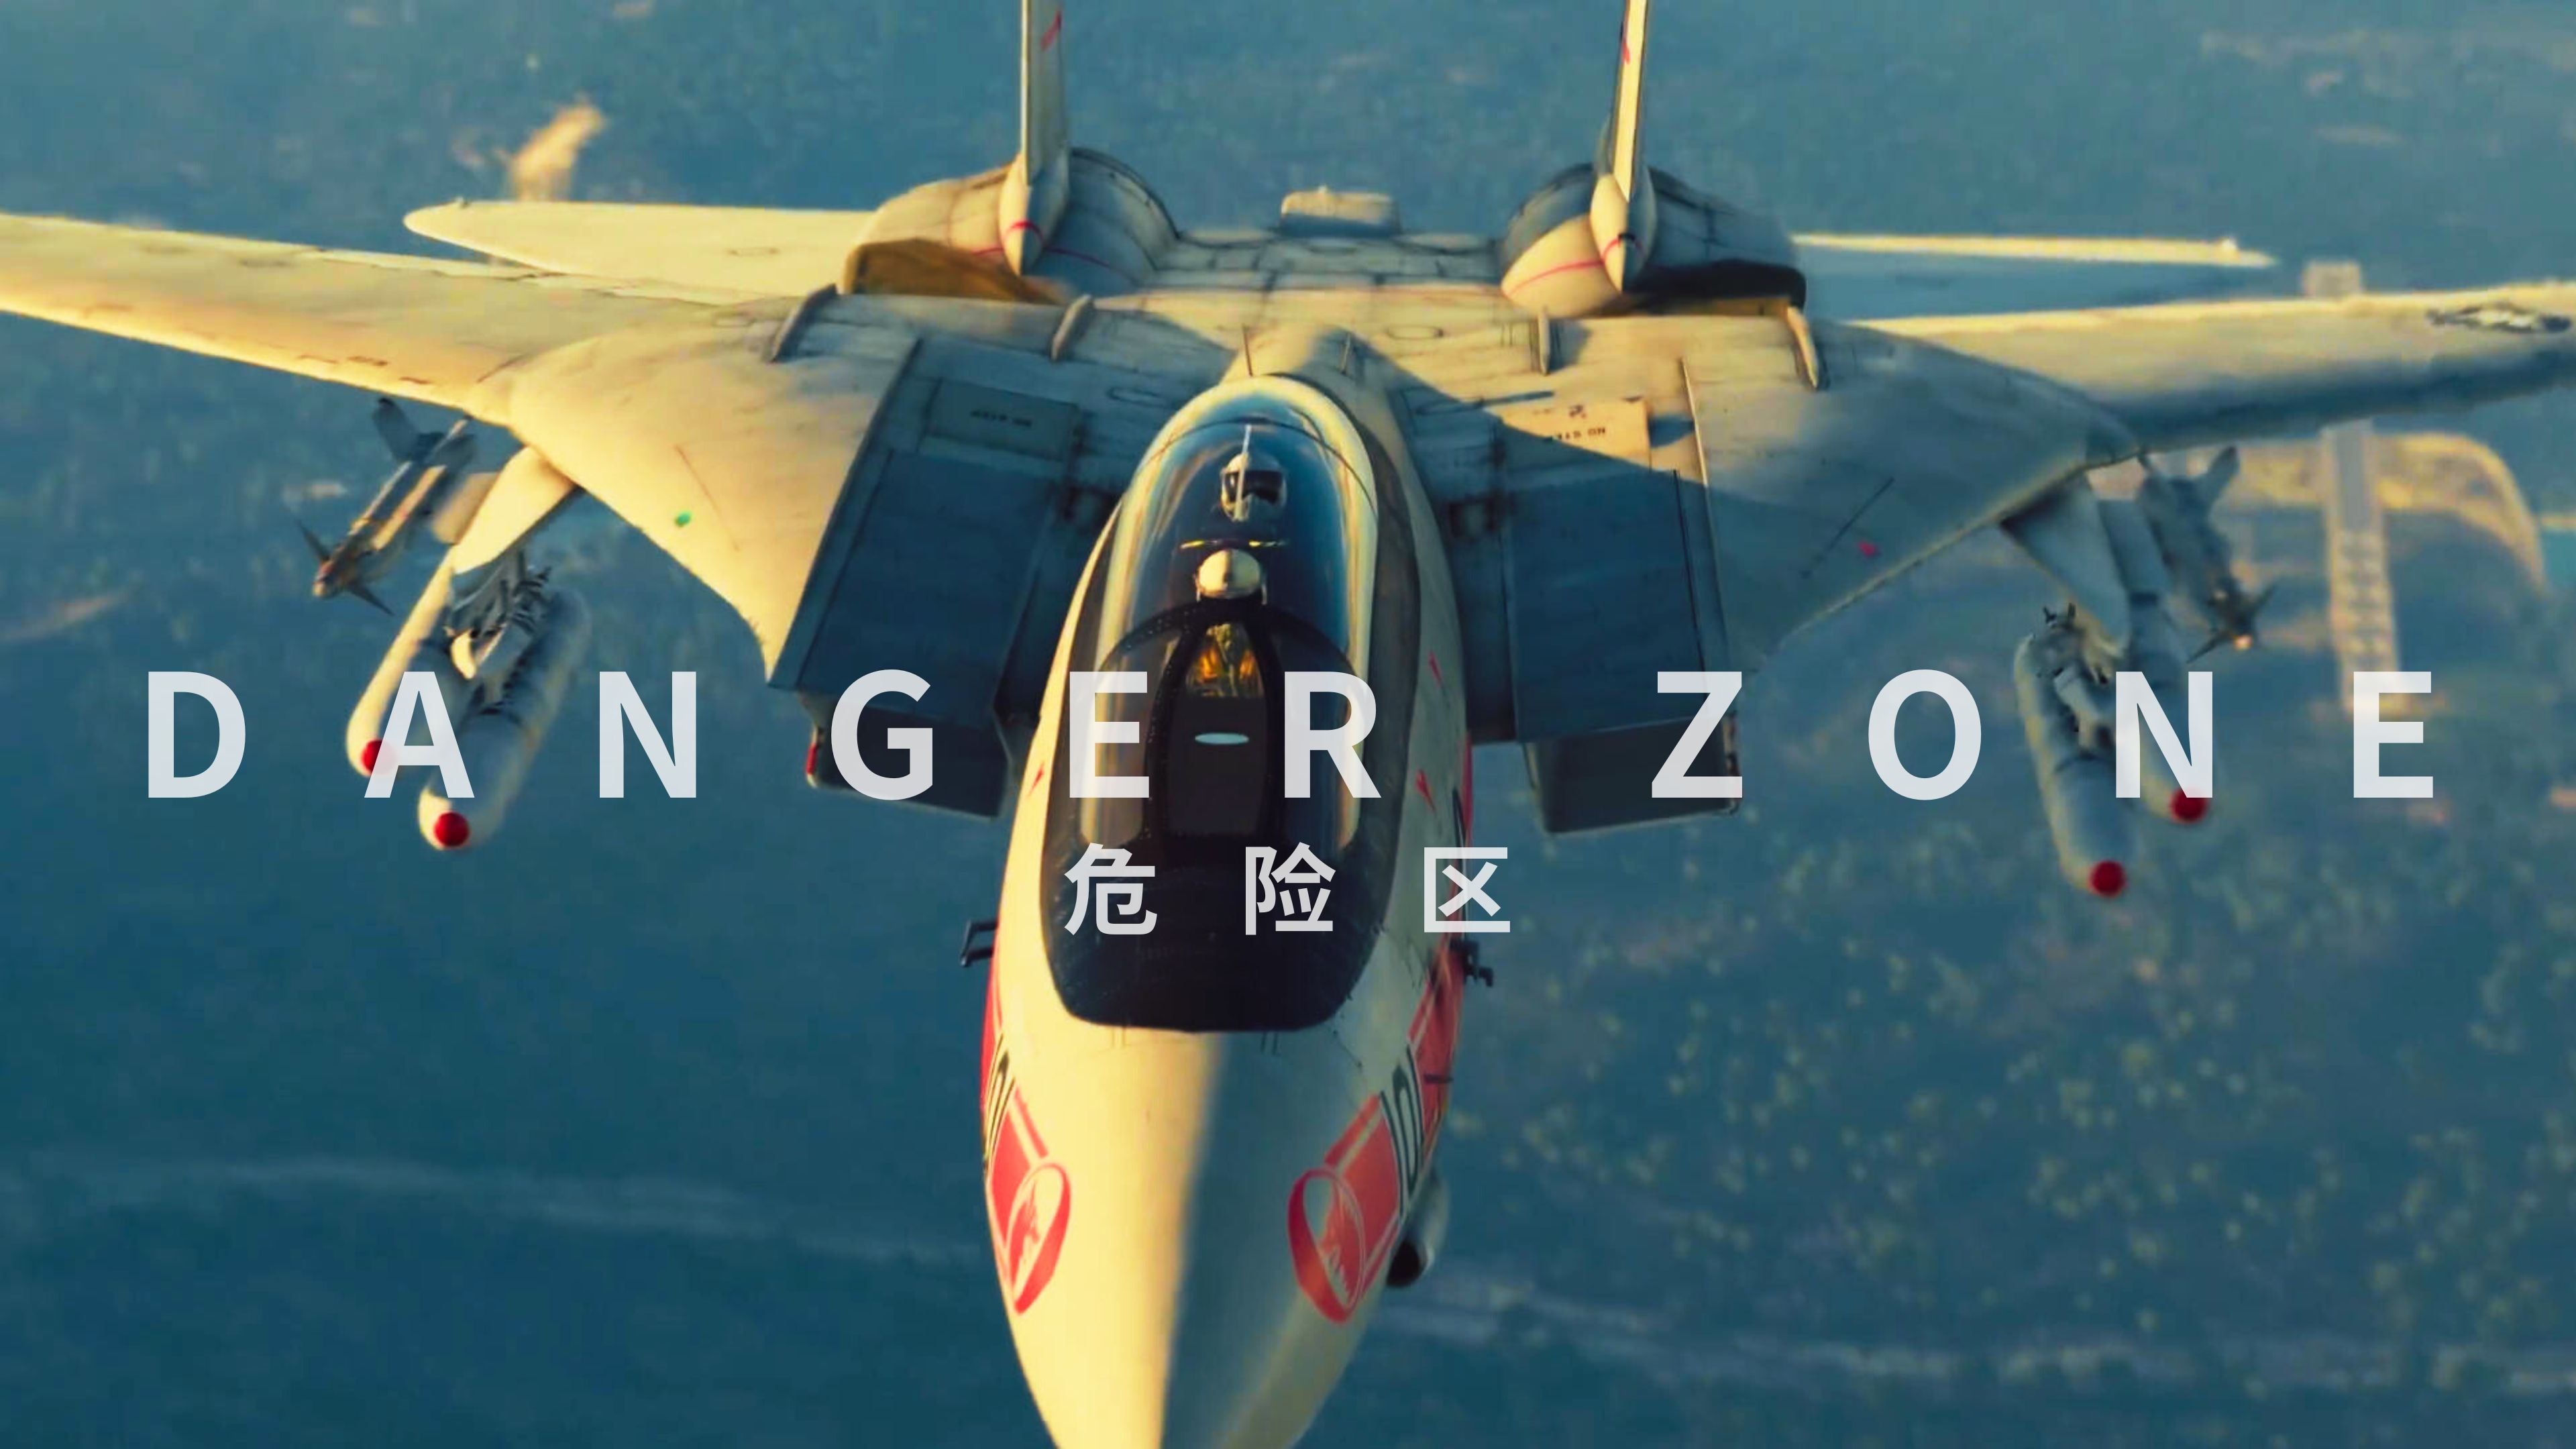 【战雷金曲MV】冲上云霄!壮志凌云电影主题曲 Danger Zone 《危险区》混剪MV